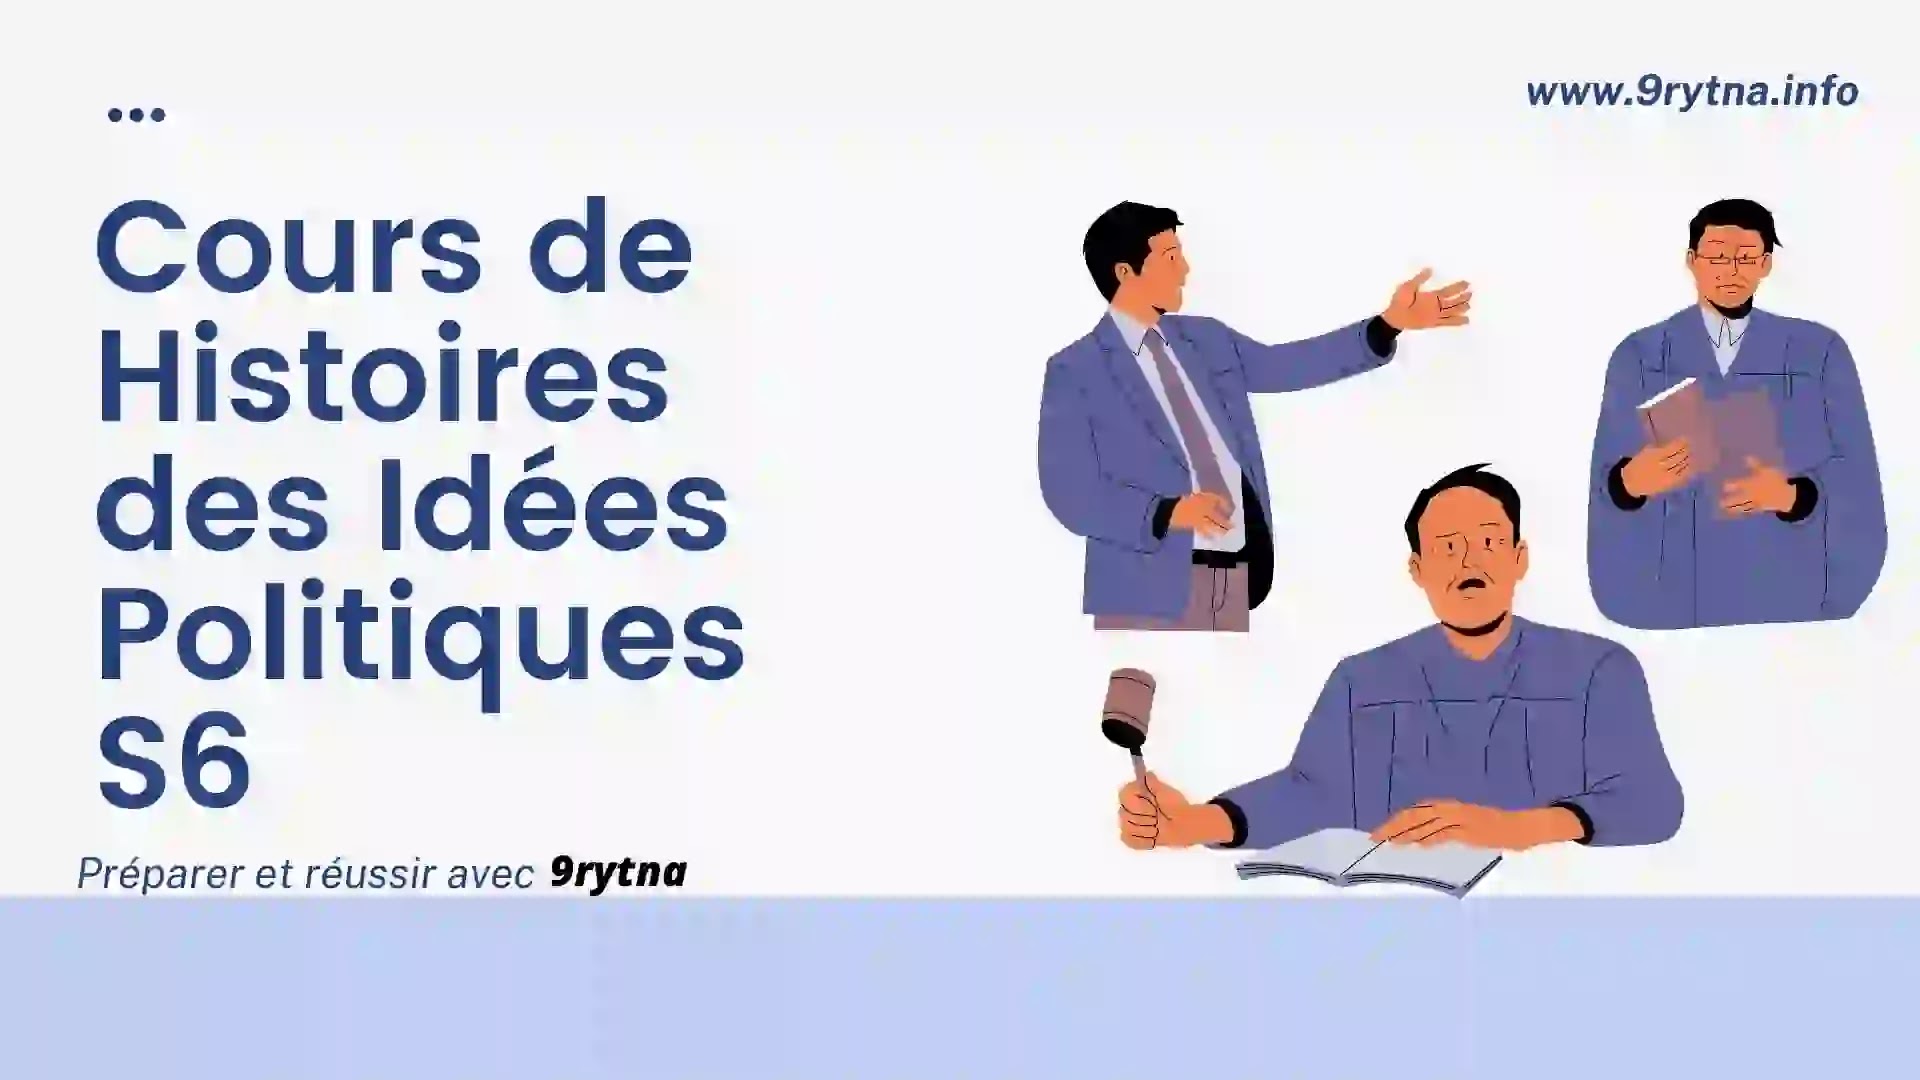 Cours de histoires des idées politiques S6 - Droit en français